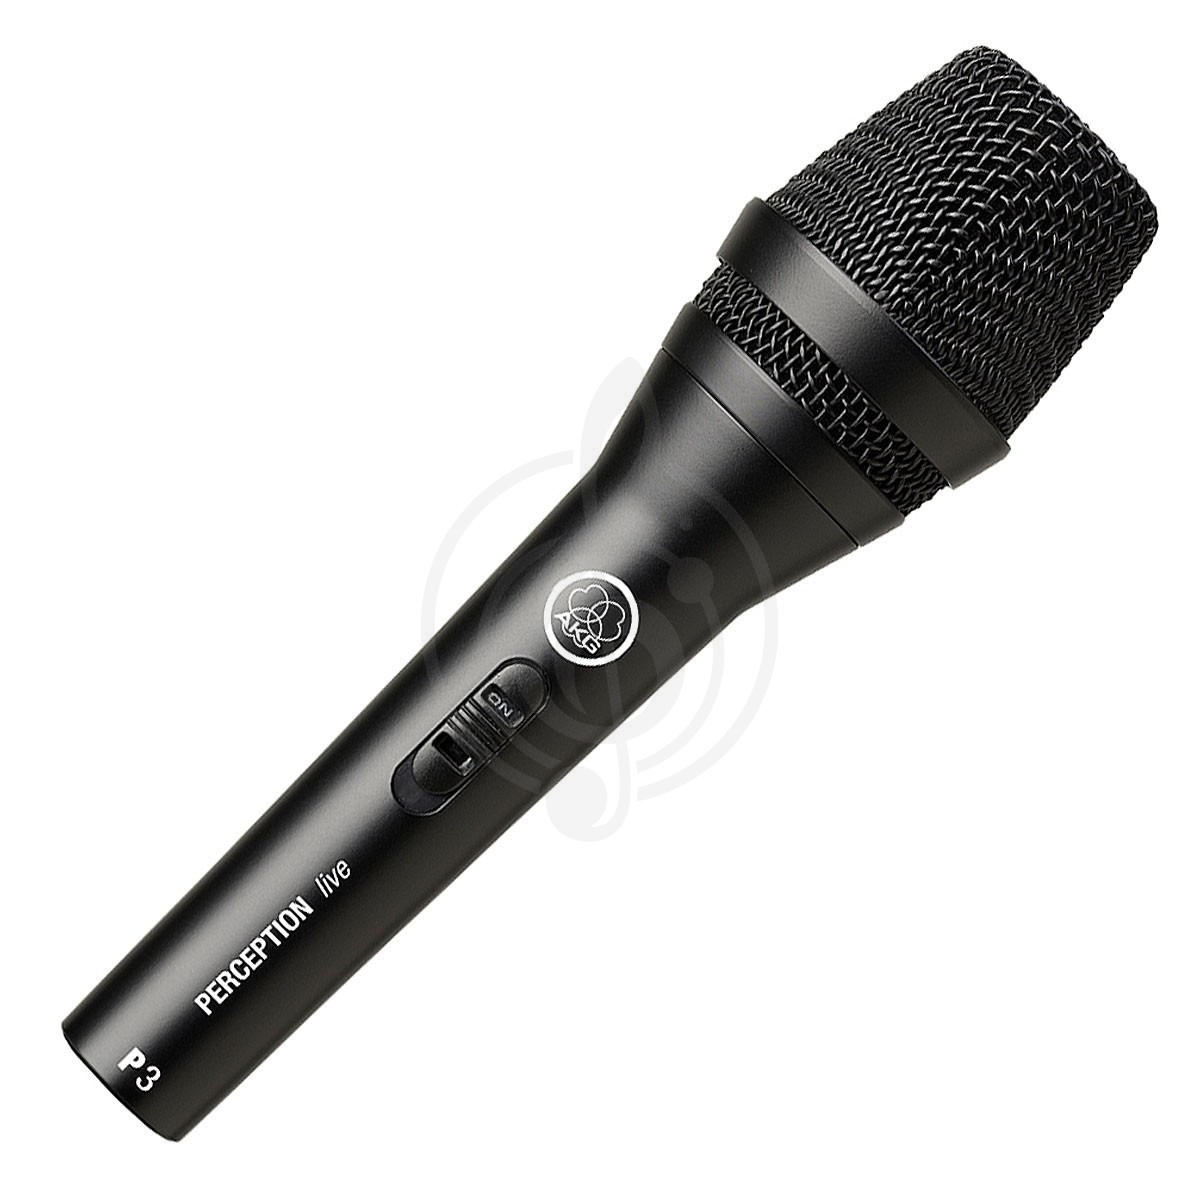 Динамический вокальный микрофон Динамические вокальные микрофоны AKG AKG P3S микрофон вокальный/инструментальный динамический кардиоидный P3S - фото 1